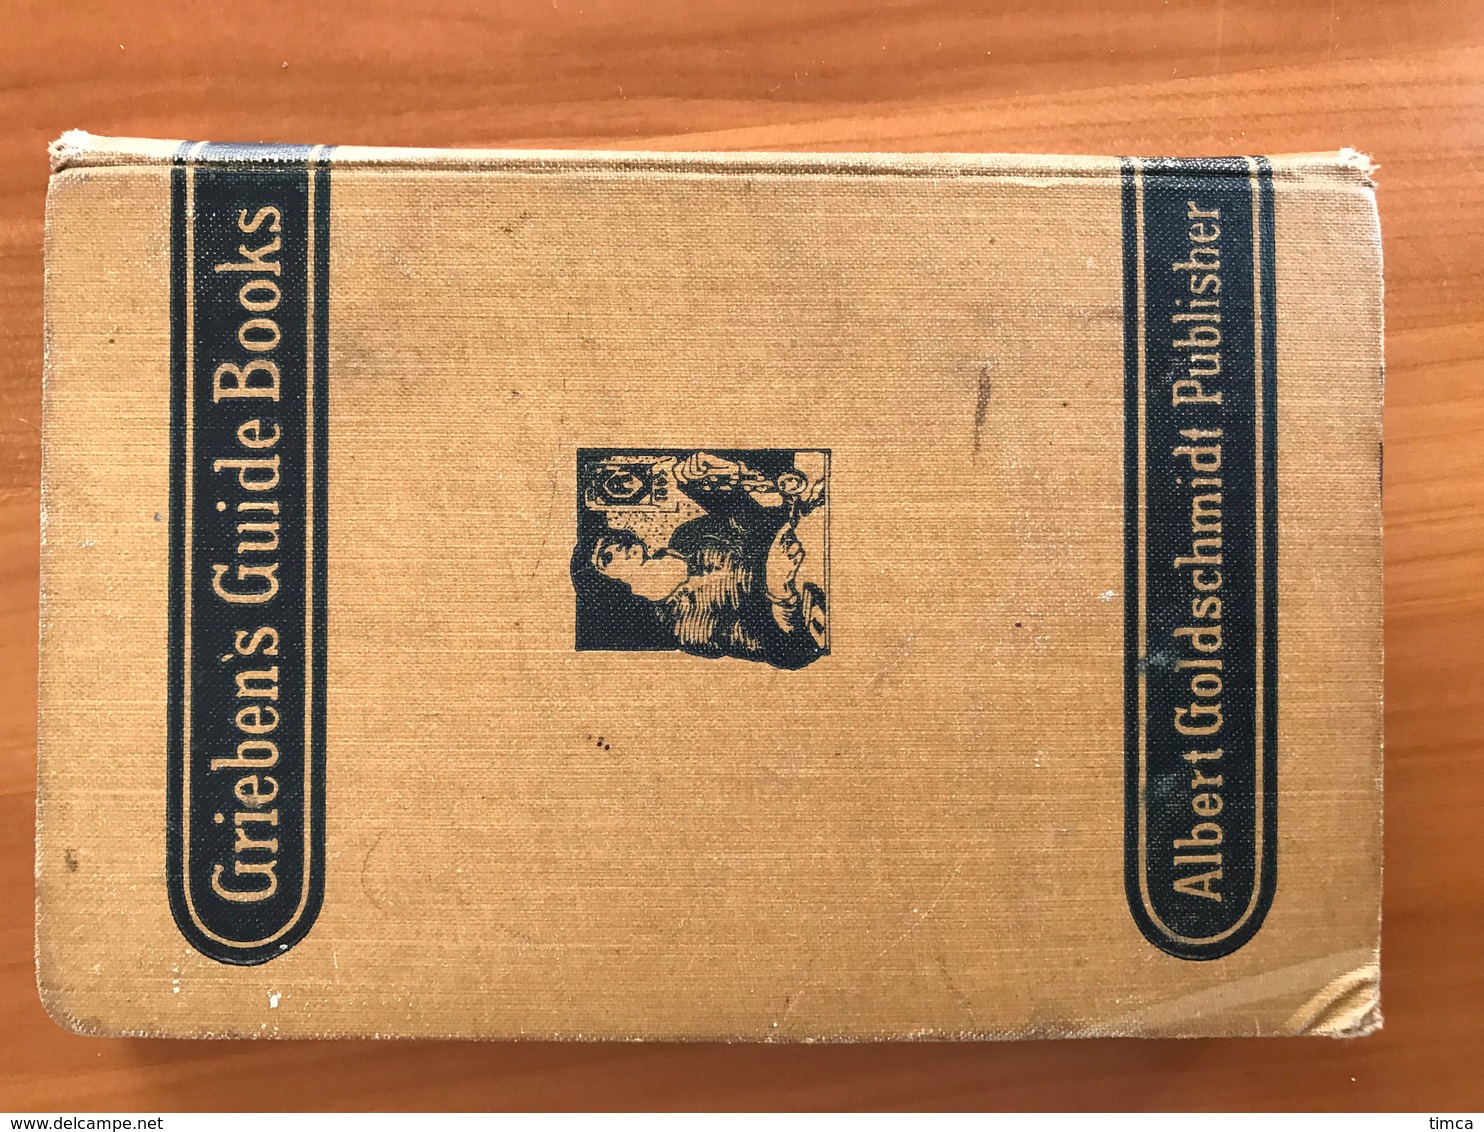 00001 Guide Touristique - Grieben's Guide Books Switzerland 1912 - Williams & Norgate - Europa